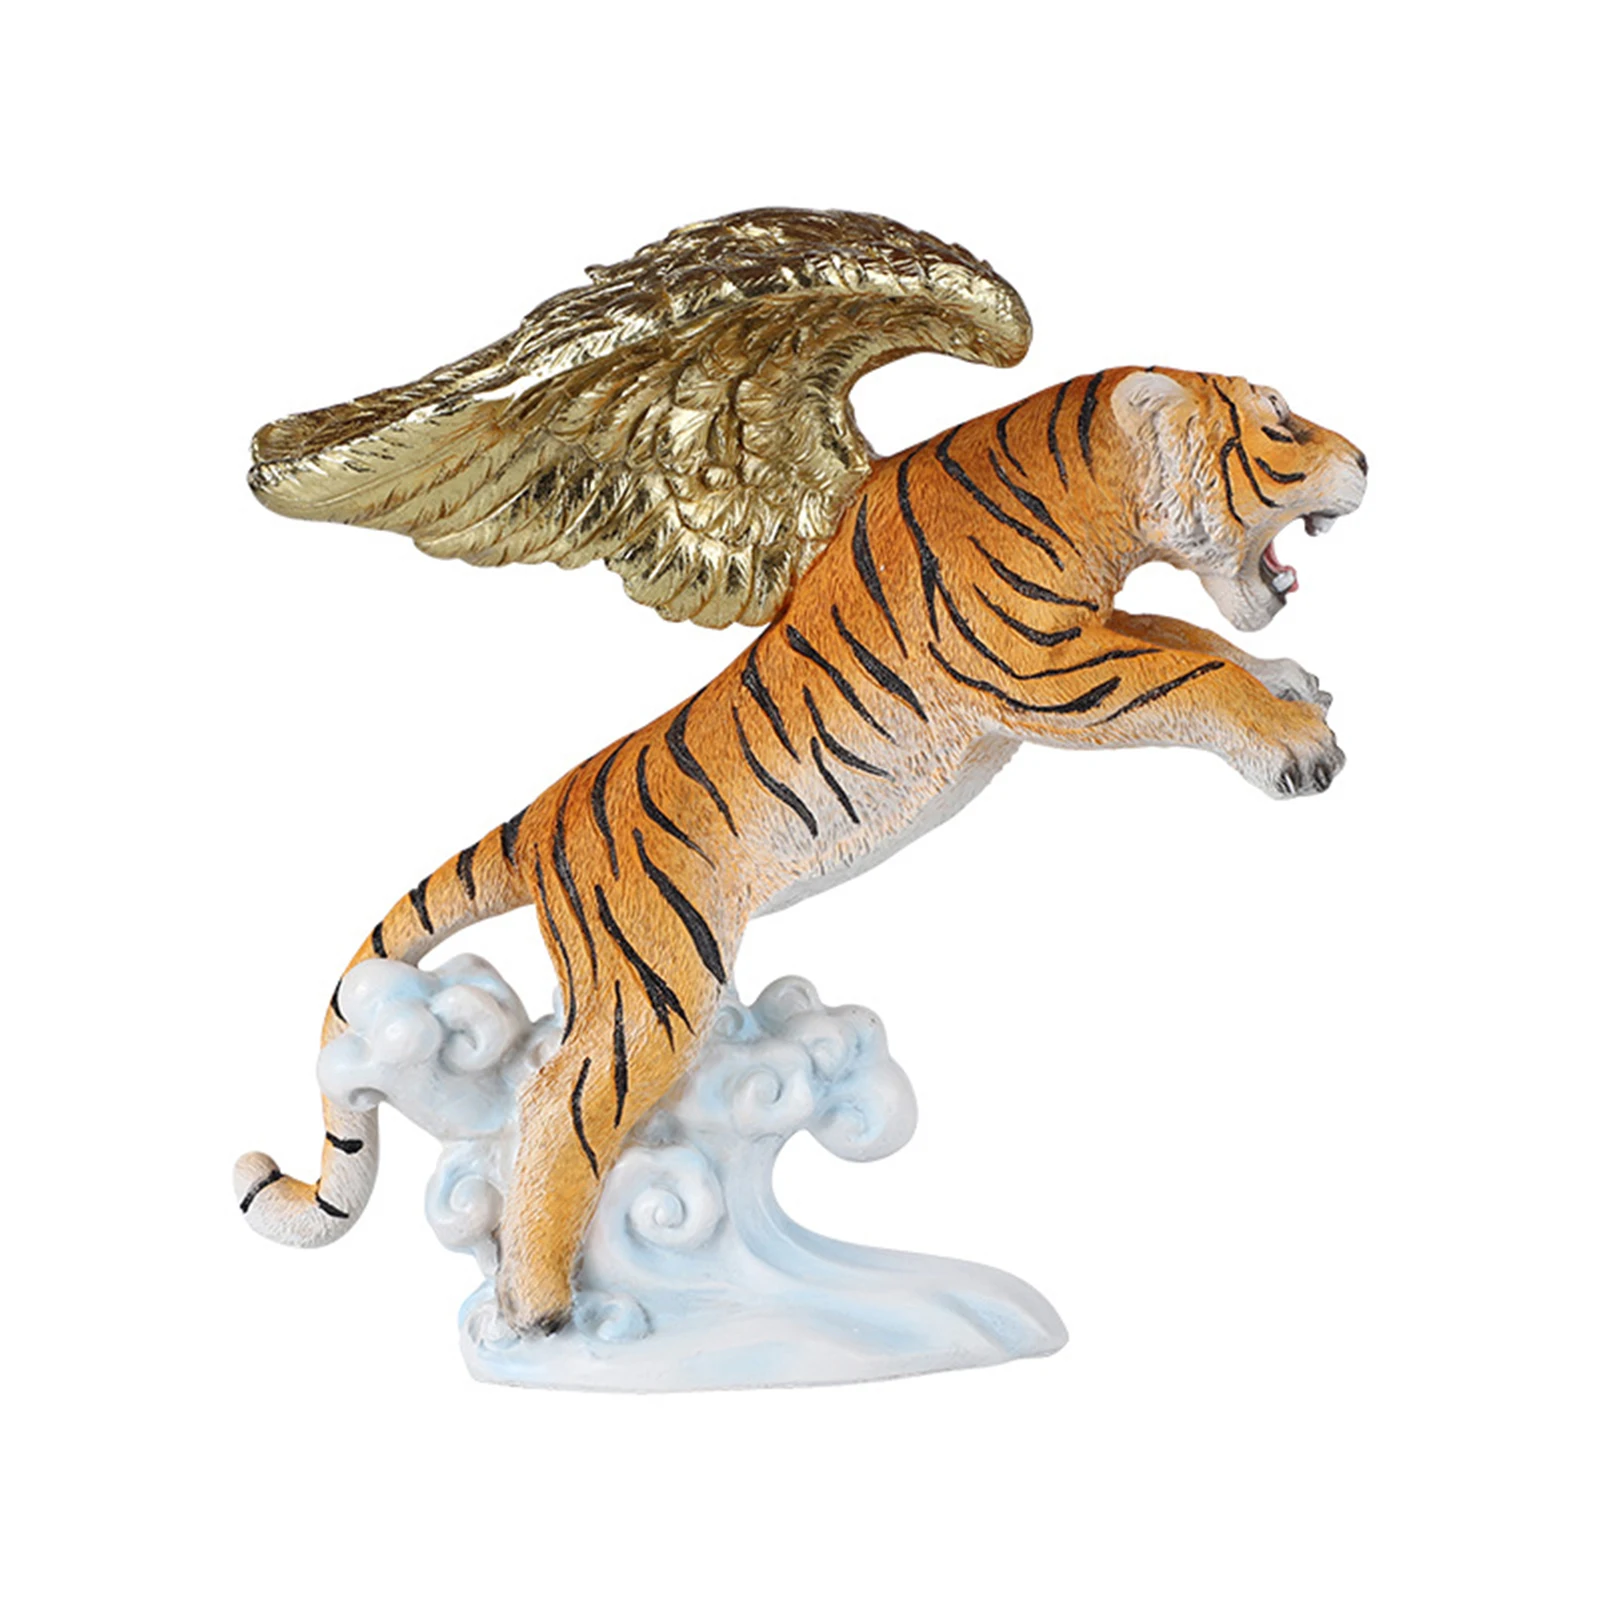 

Фигурка тигра, Статуя китайского тигра на год Тигра, новогодние украшения 2022 года, тигр фэн-шуй, украшение с тигром